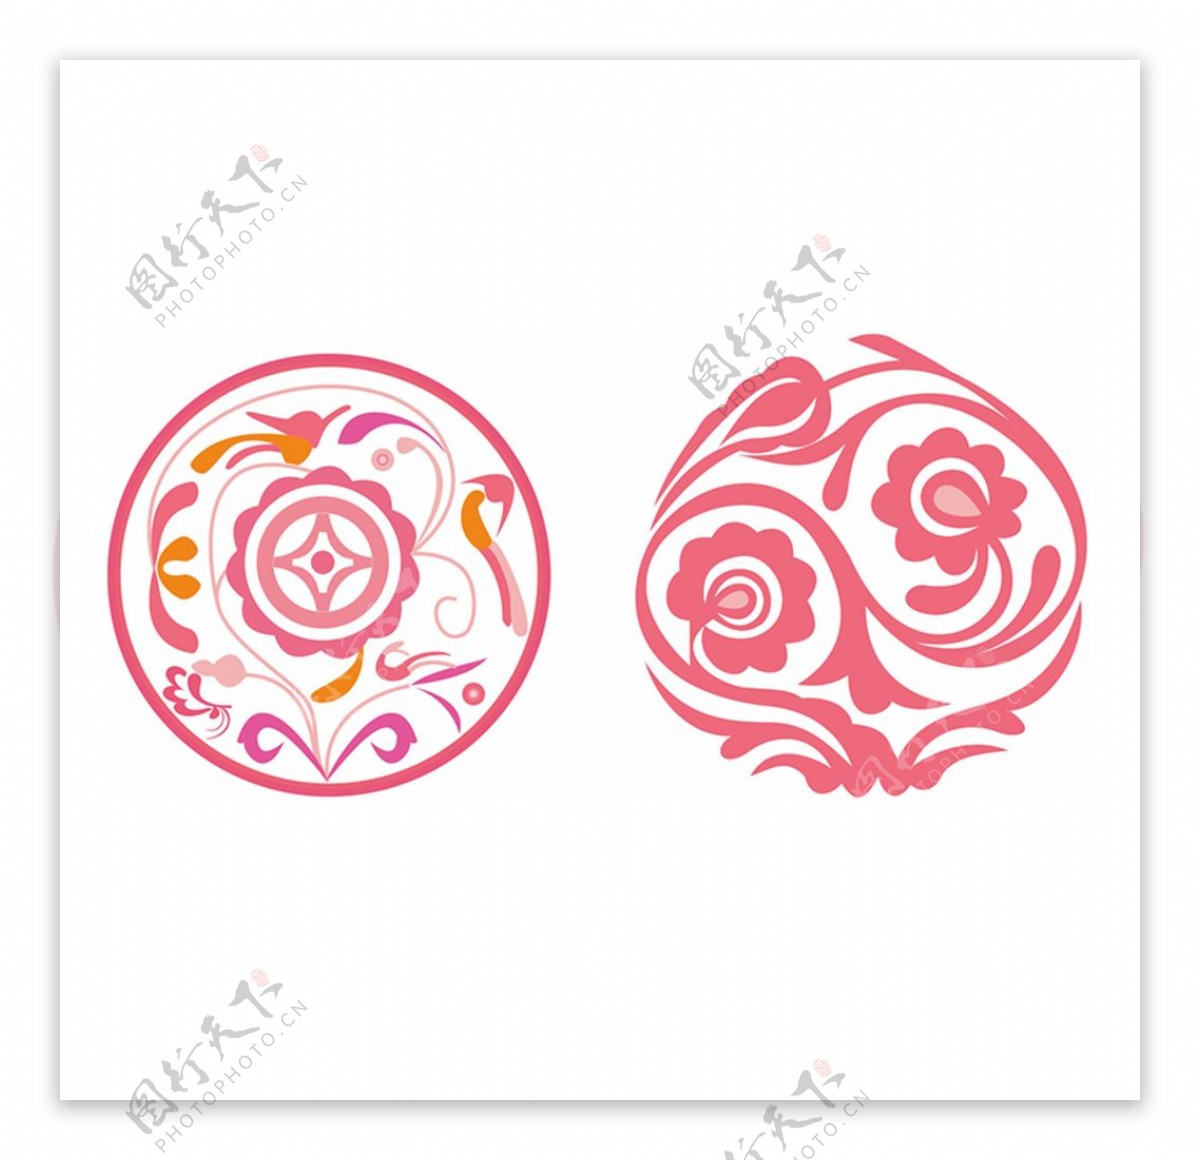 少数民族侗族花纹纹样图片